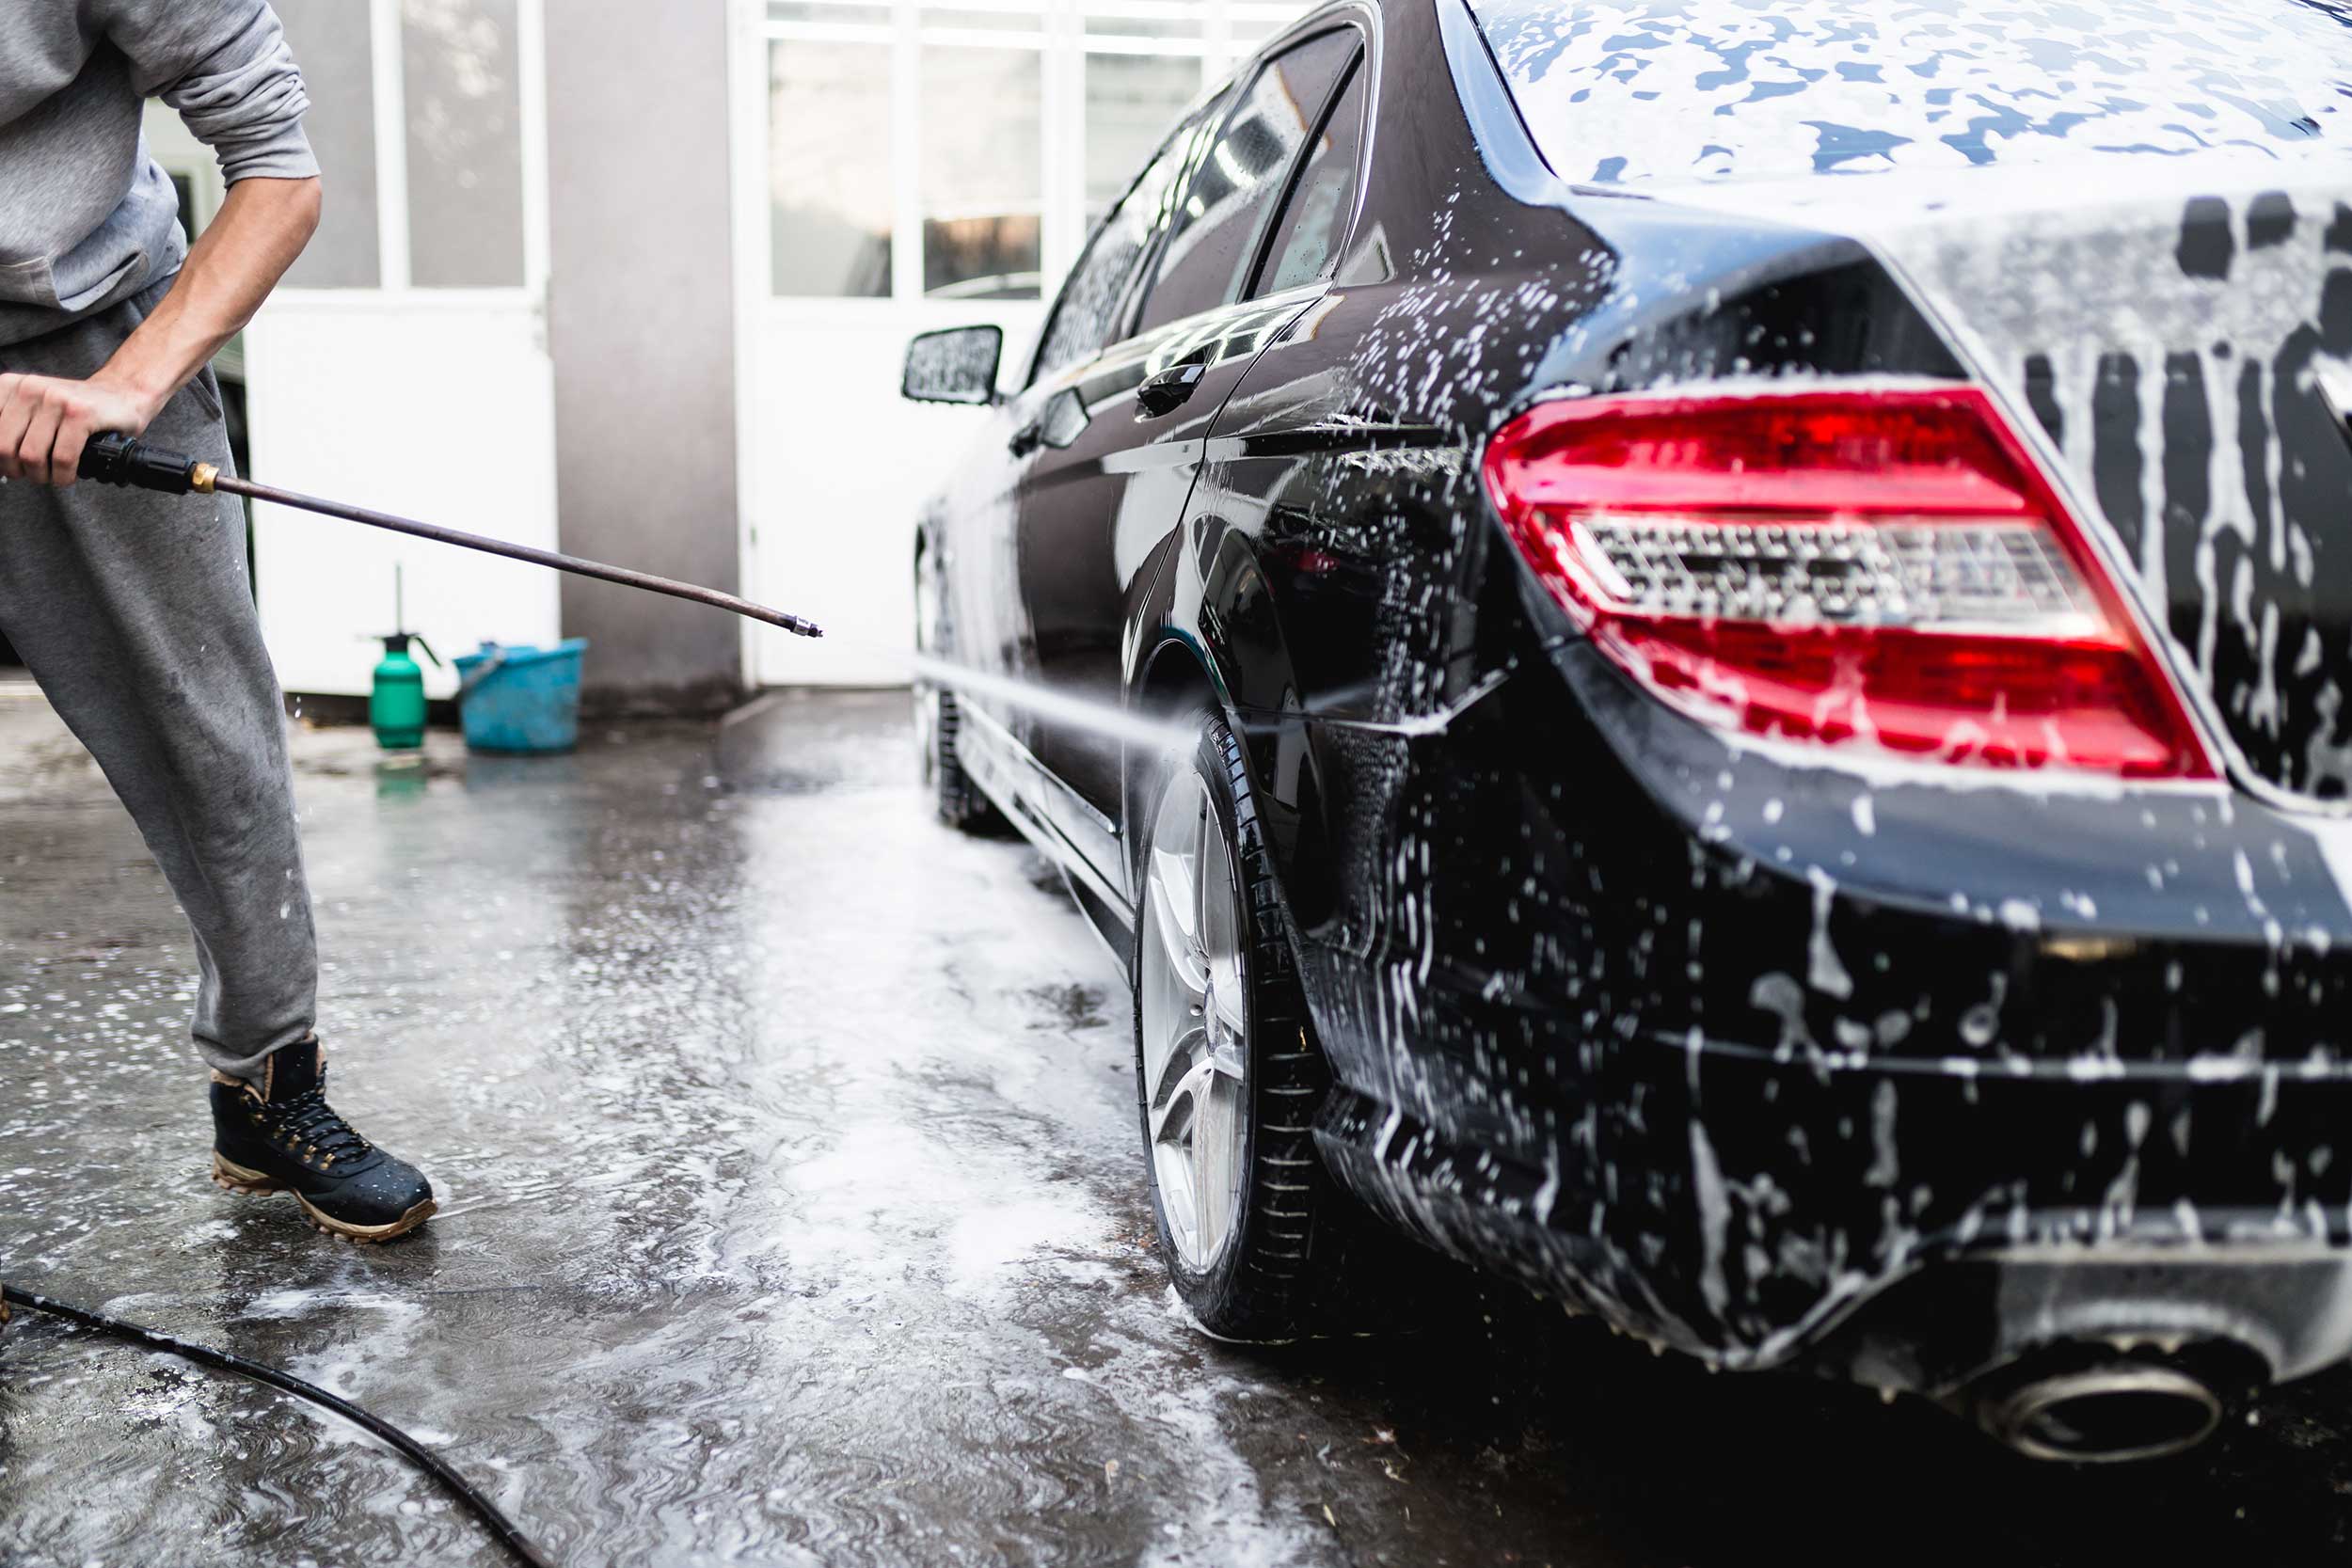 كيف تغسل السيارة فى المنزل؟ - تجهيز السيارة قبل غسلها